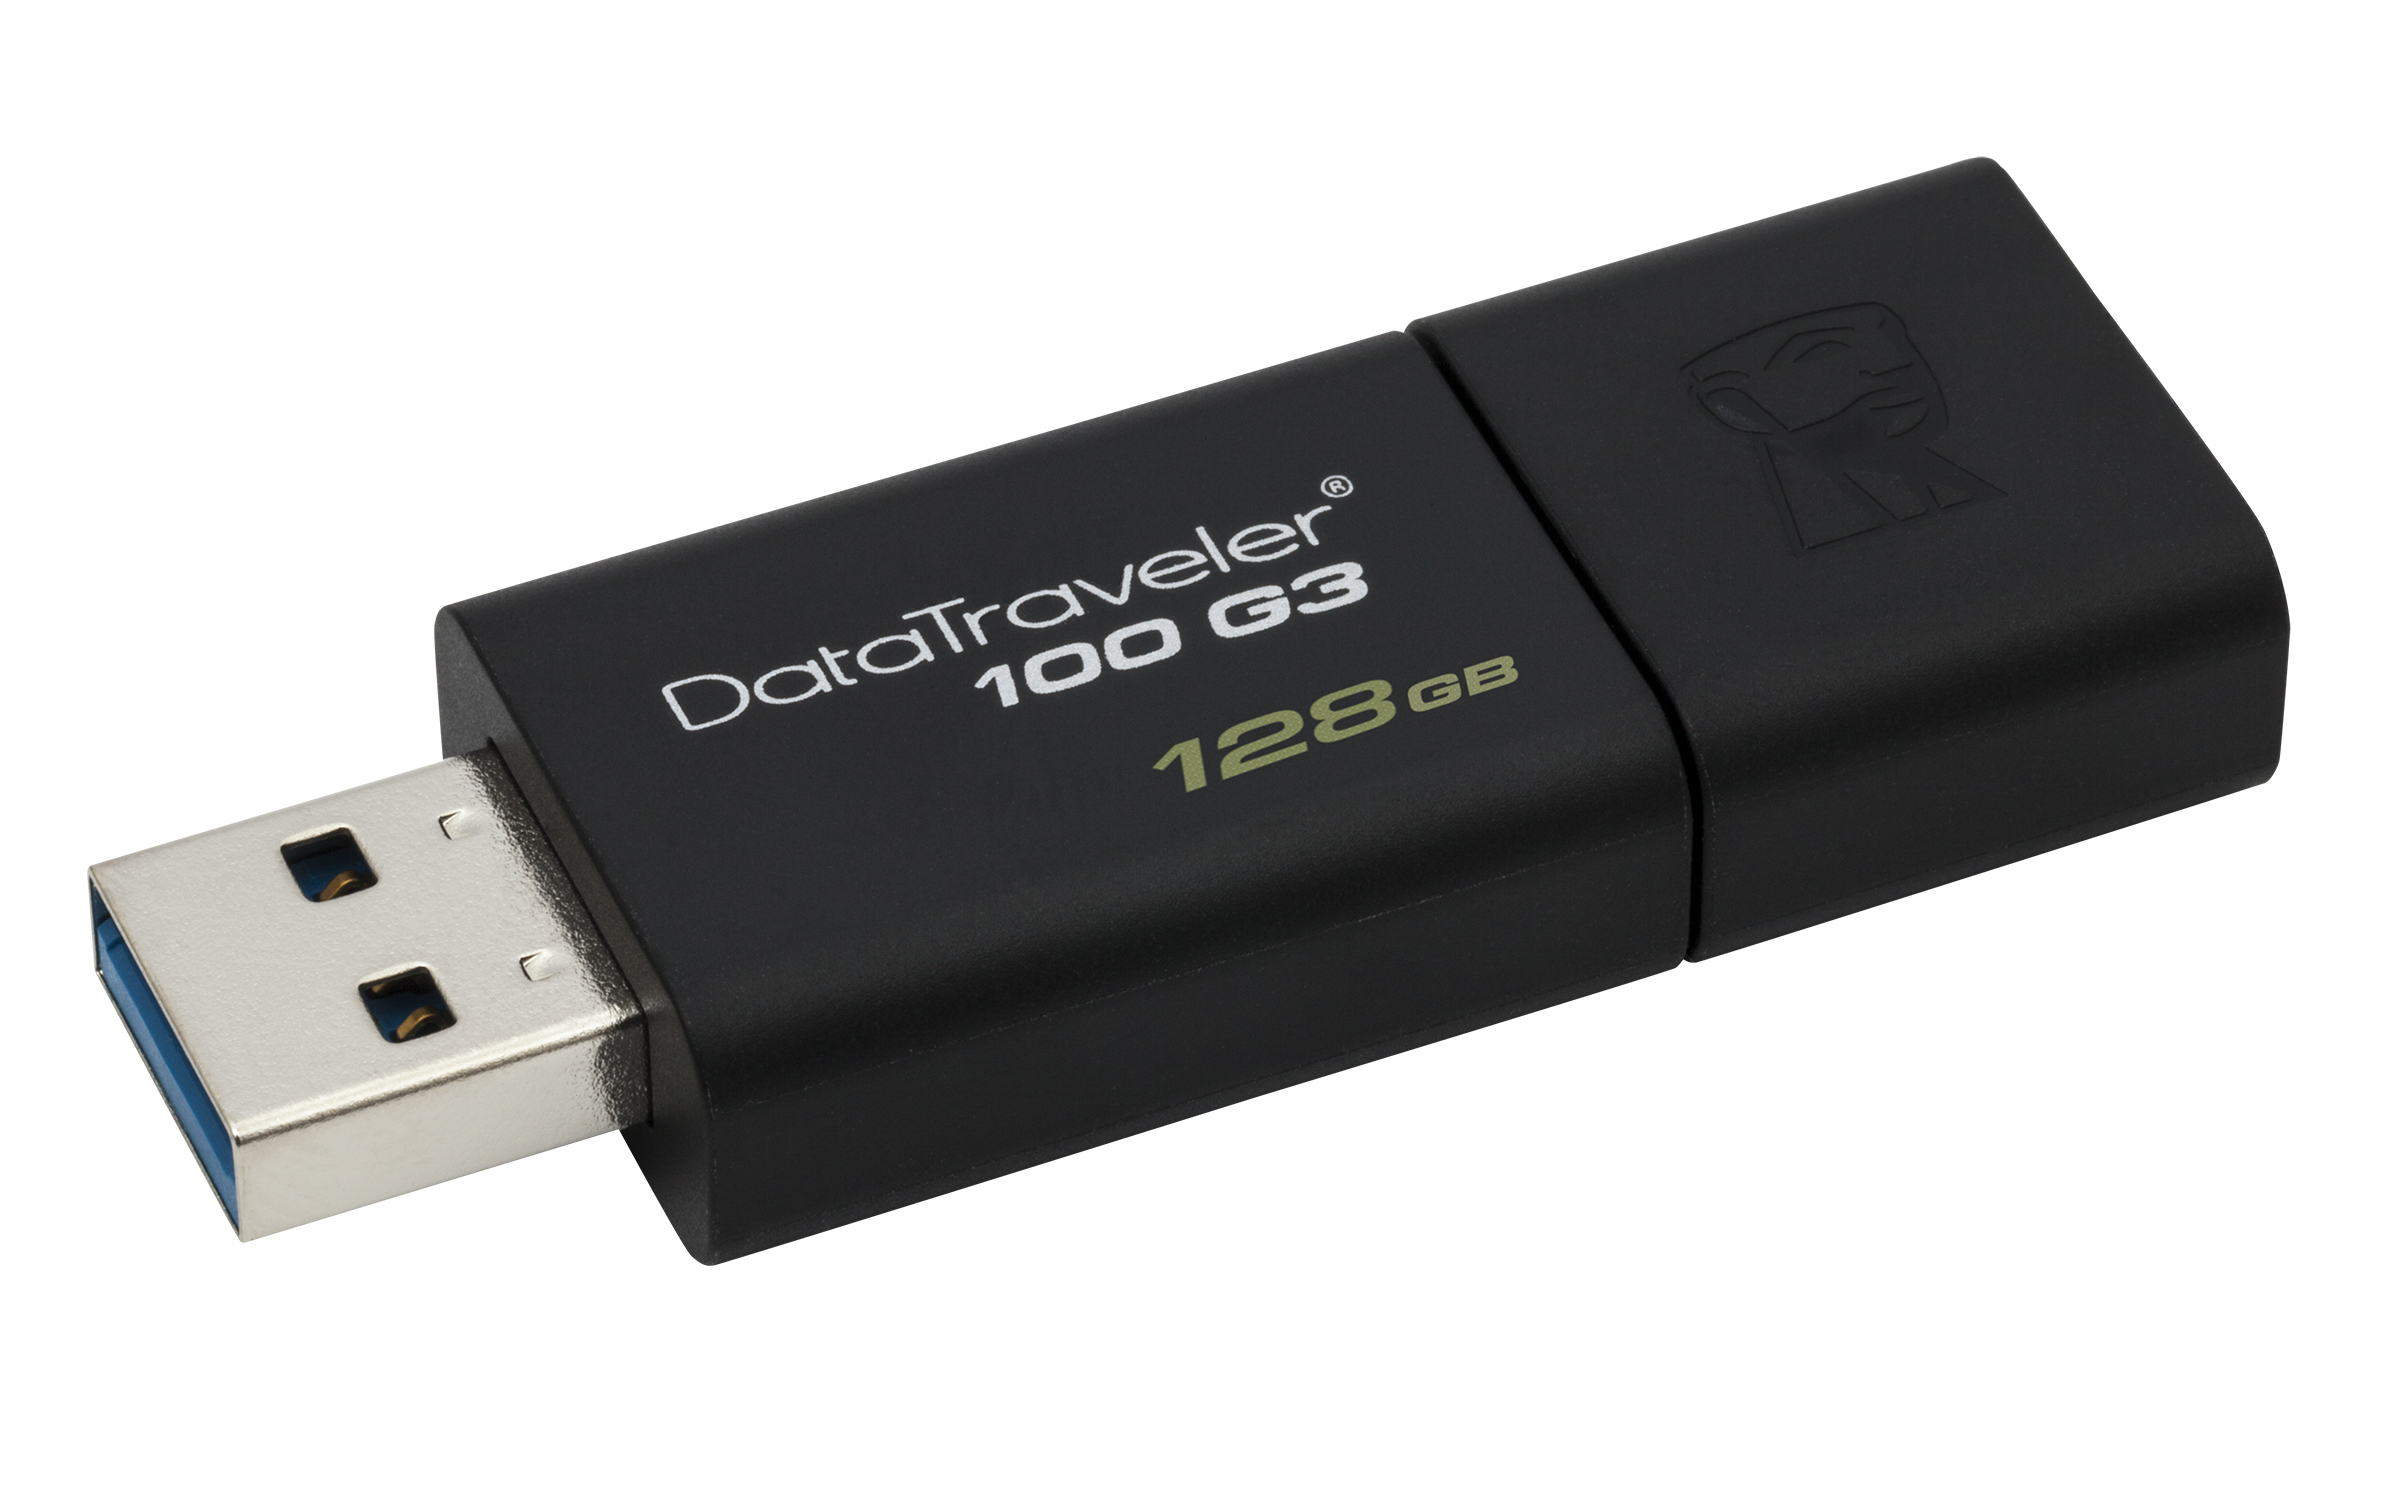 USB Kingston DT100G3 128Gb USB3.0